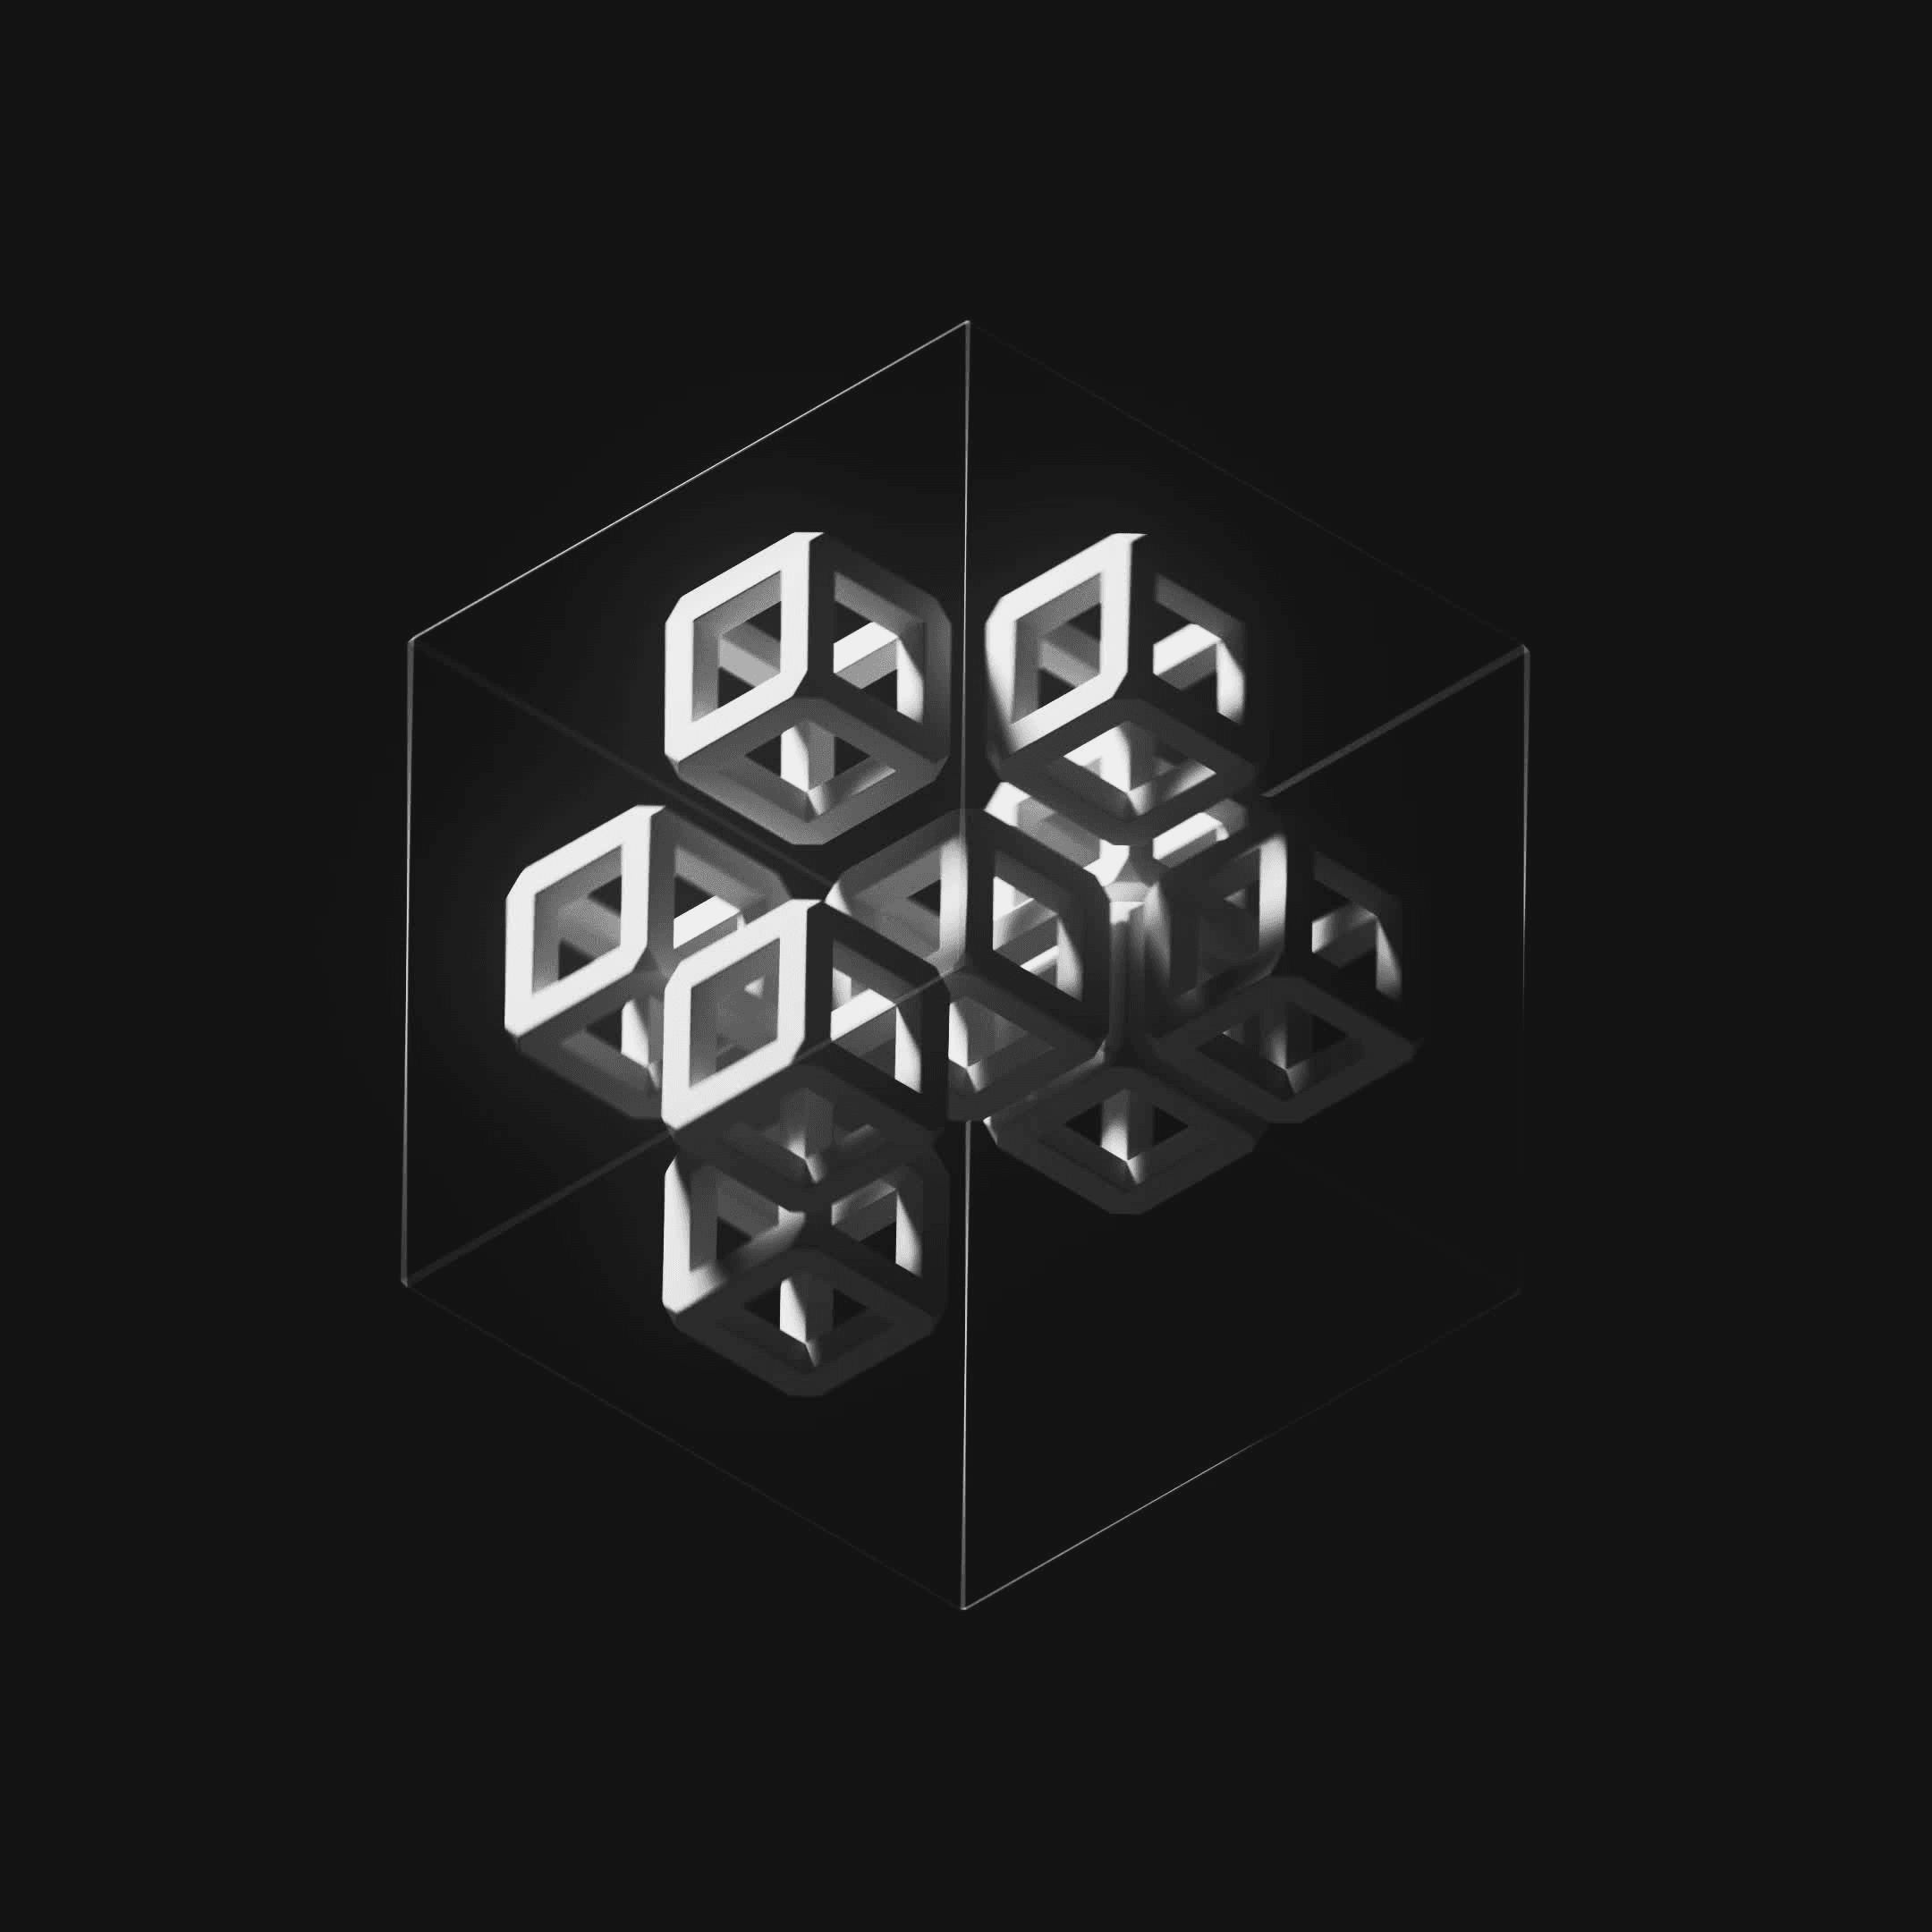 Ten Cubes #138/247